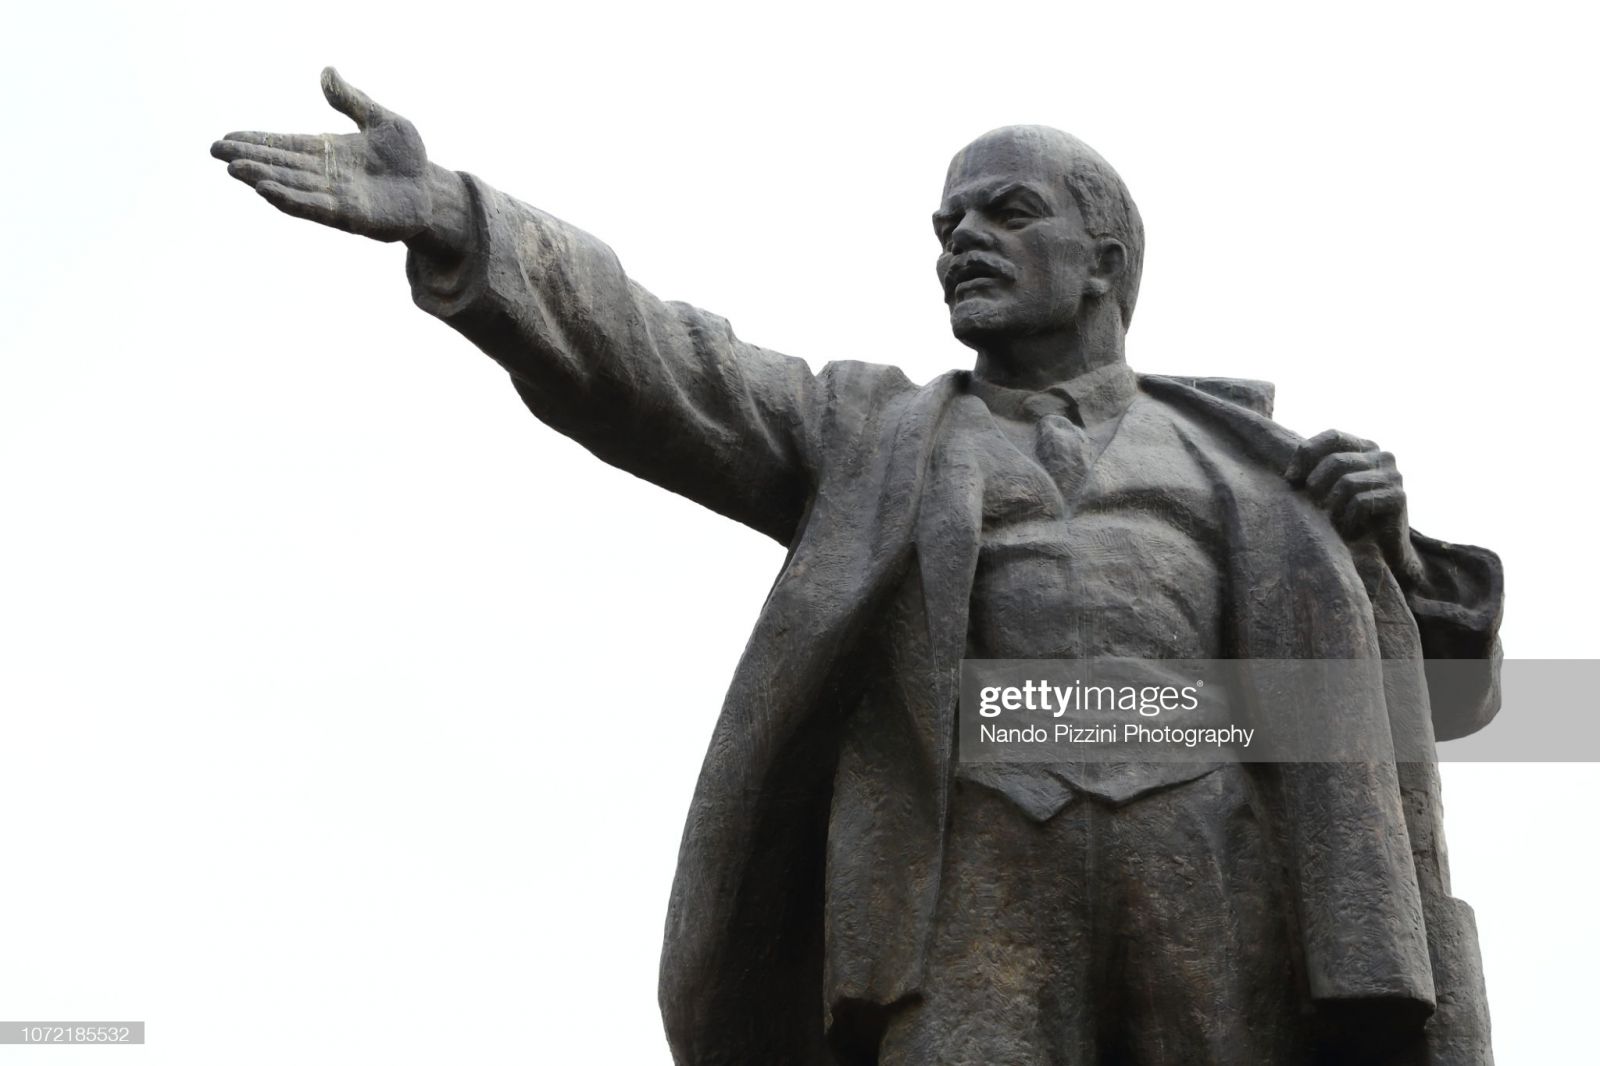 V. Lenin mất sớm cũng là nguyên nhân dẫn đến sự sụp đổ của Liên Xô